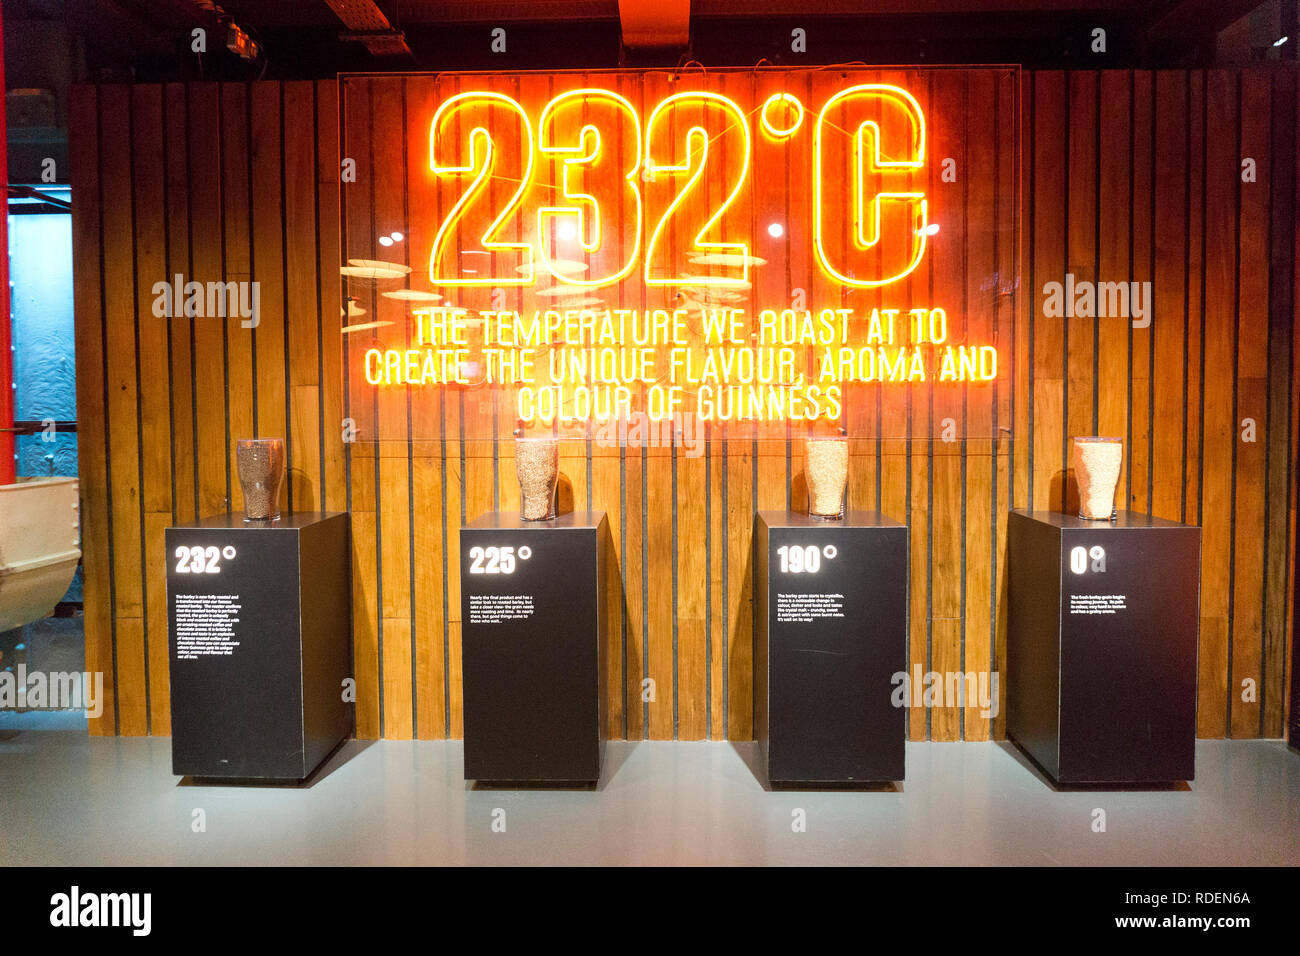 232 gradi segno della temperatura presso il Magazzino Guinness Brewery a Dublino, Irlanda, 15 gen 2019. Foto Stock